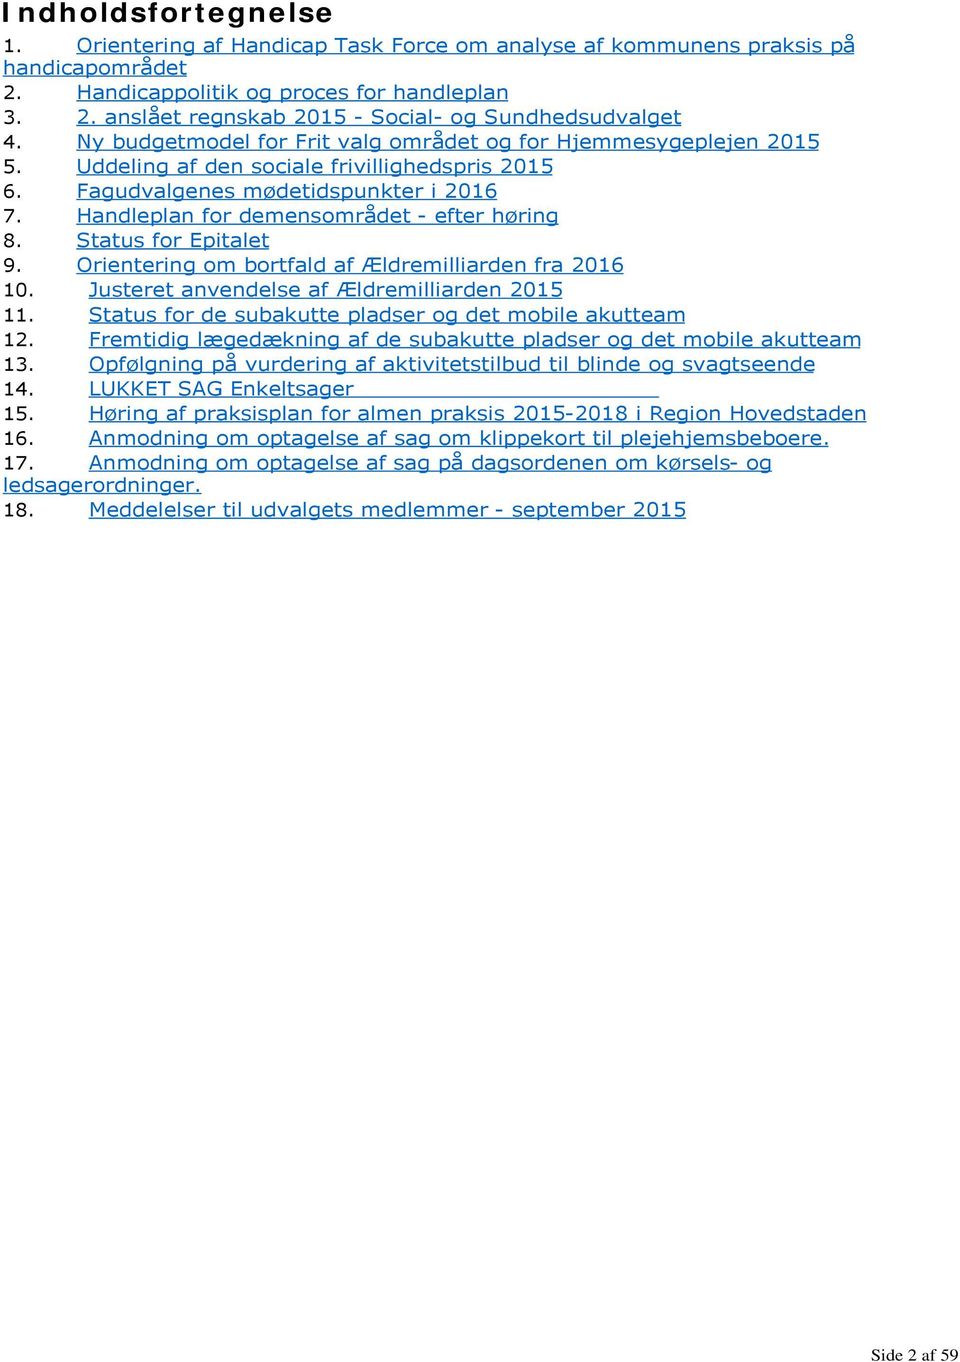 Handleplan for demensområdet - efter høring 8. Status for Epitalet 9. Orientering om bortfald af Ældremilliarden fra 2016 10. Justeret anvendelse af Ældremilliarden 2015 11.